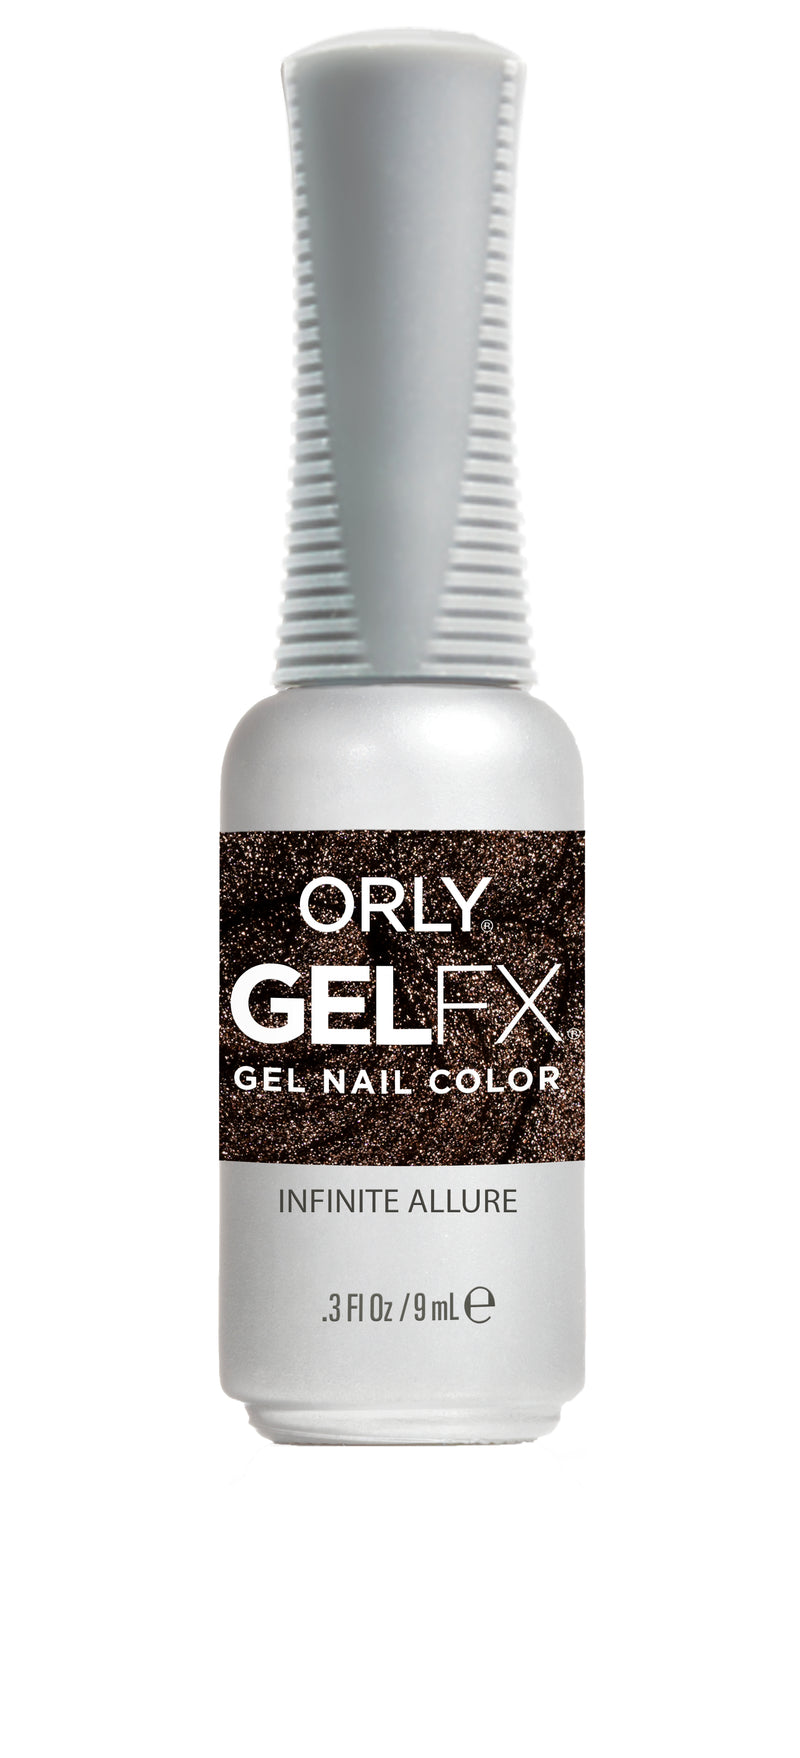 Orly Gel FX - Infinite Allure Gel Polish